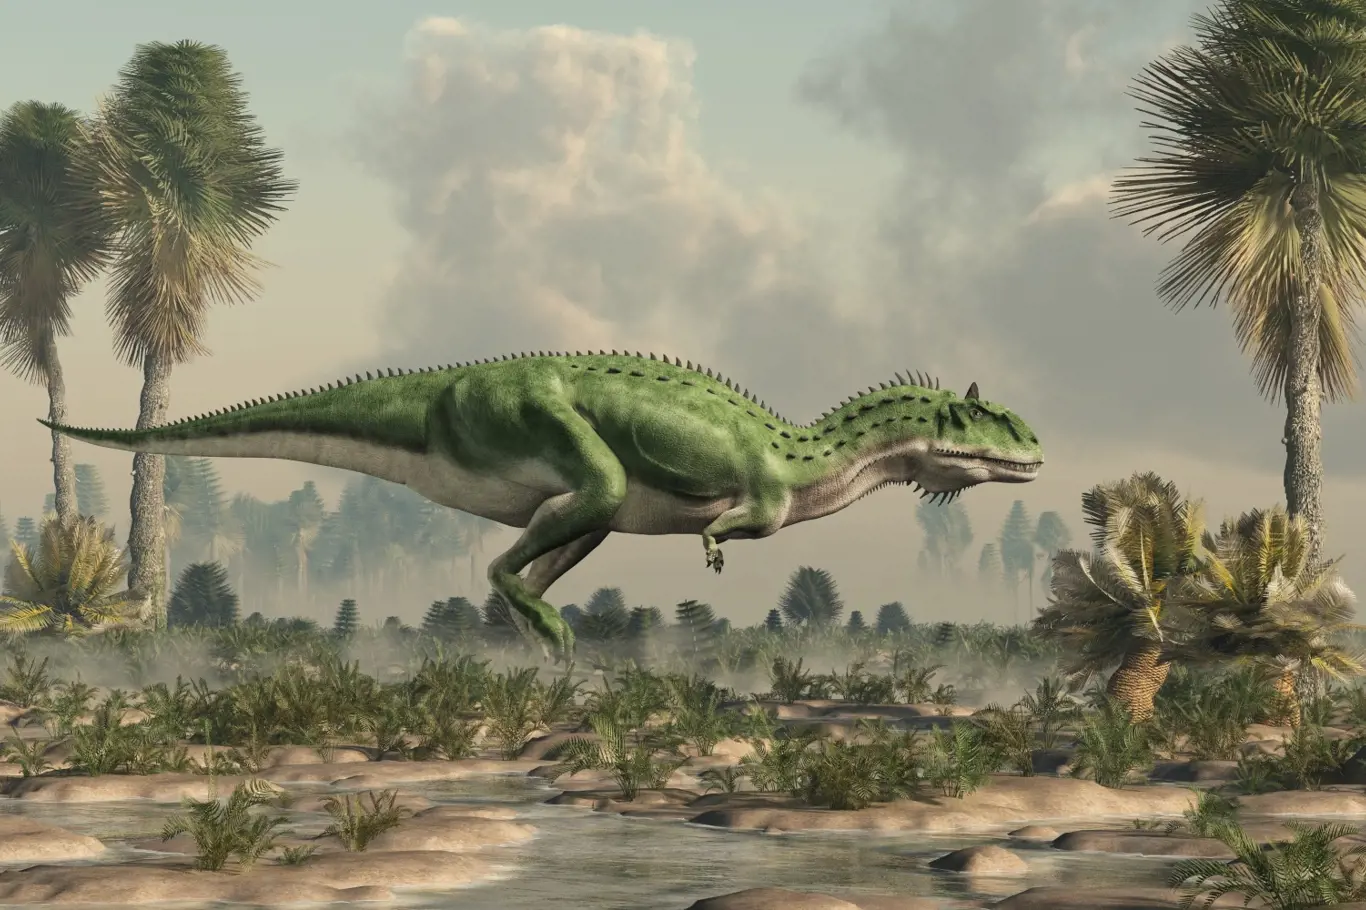 Majungasaurus byl masožravý teropodní dinosaurus, který žil v období křídy na Madagaskaru.